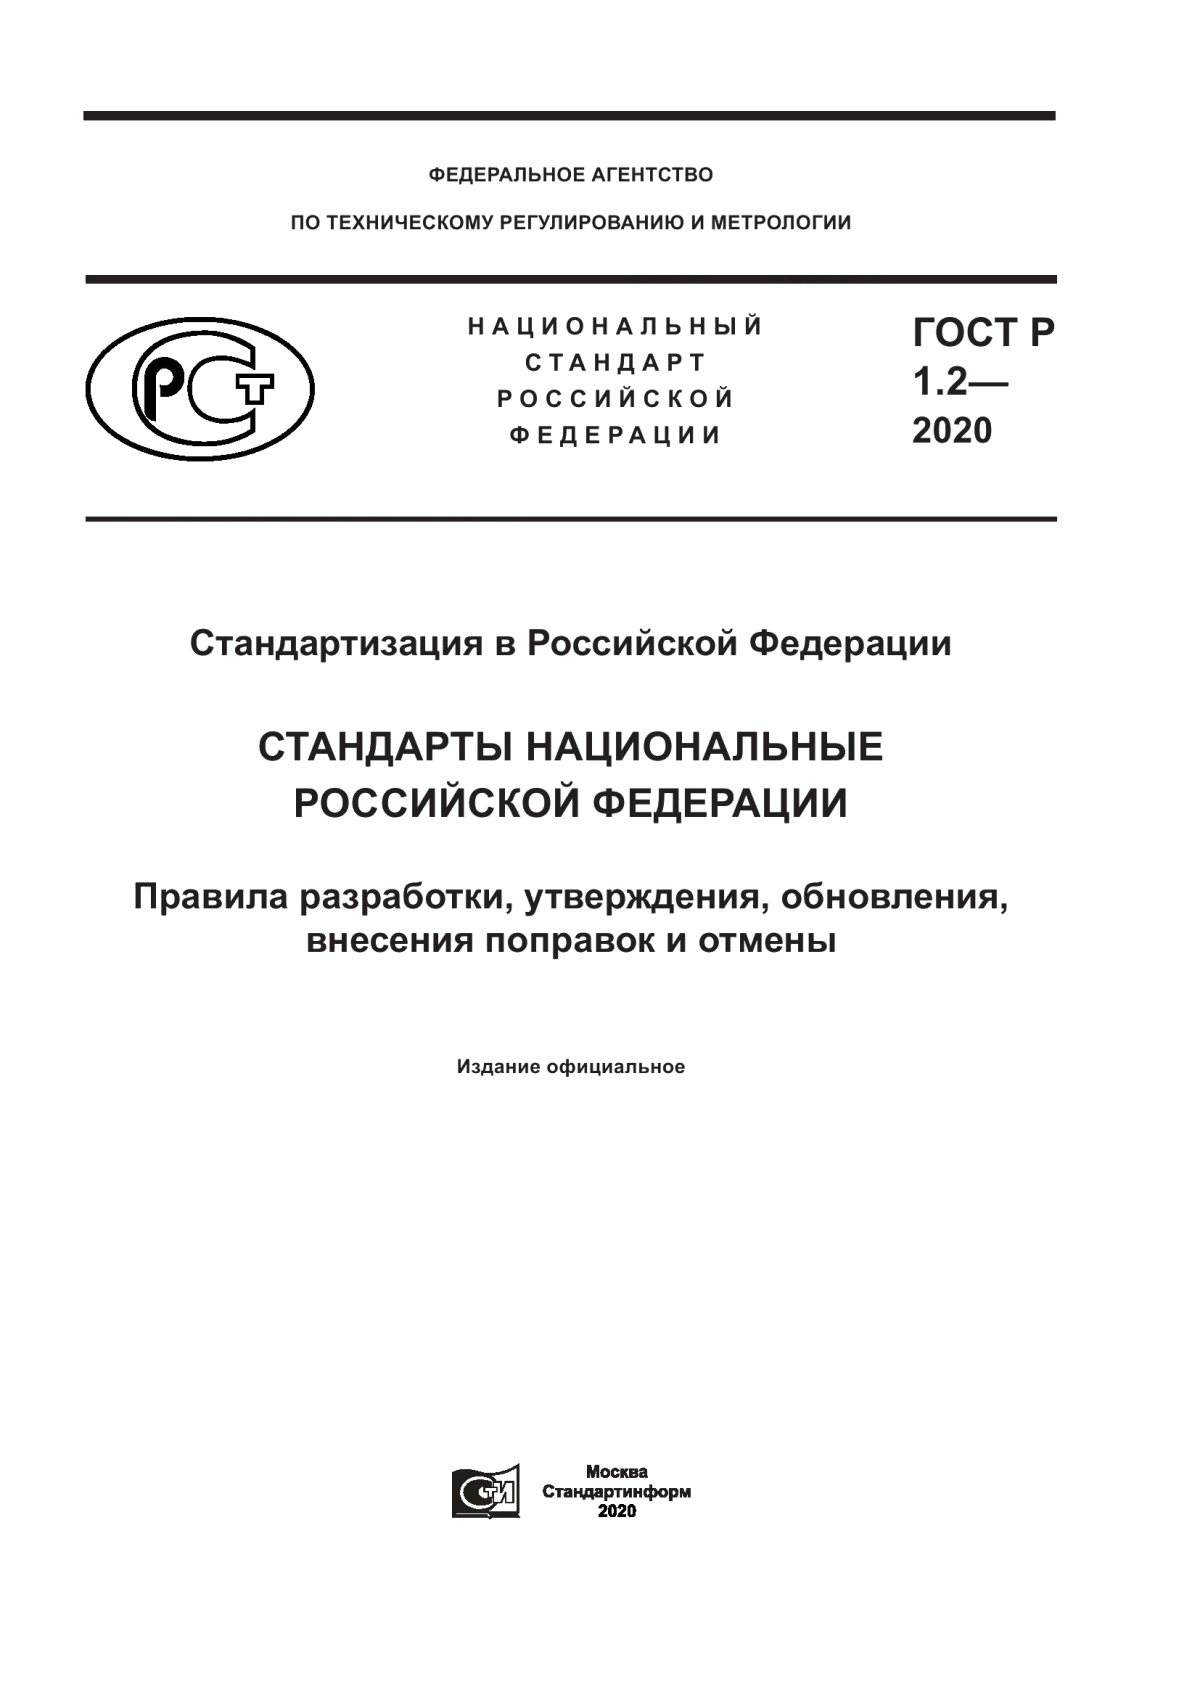 ГОСТ Р 1.2-2020 Стандартизация в Российской Федерации. Стандарты национальные Российской Федерации. Правила разработки, утверждения, обновления, внесения поправок и отмены